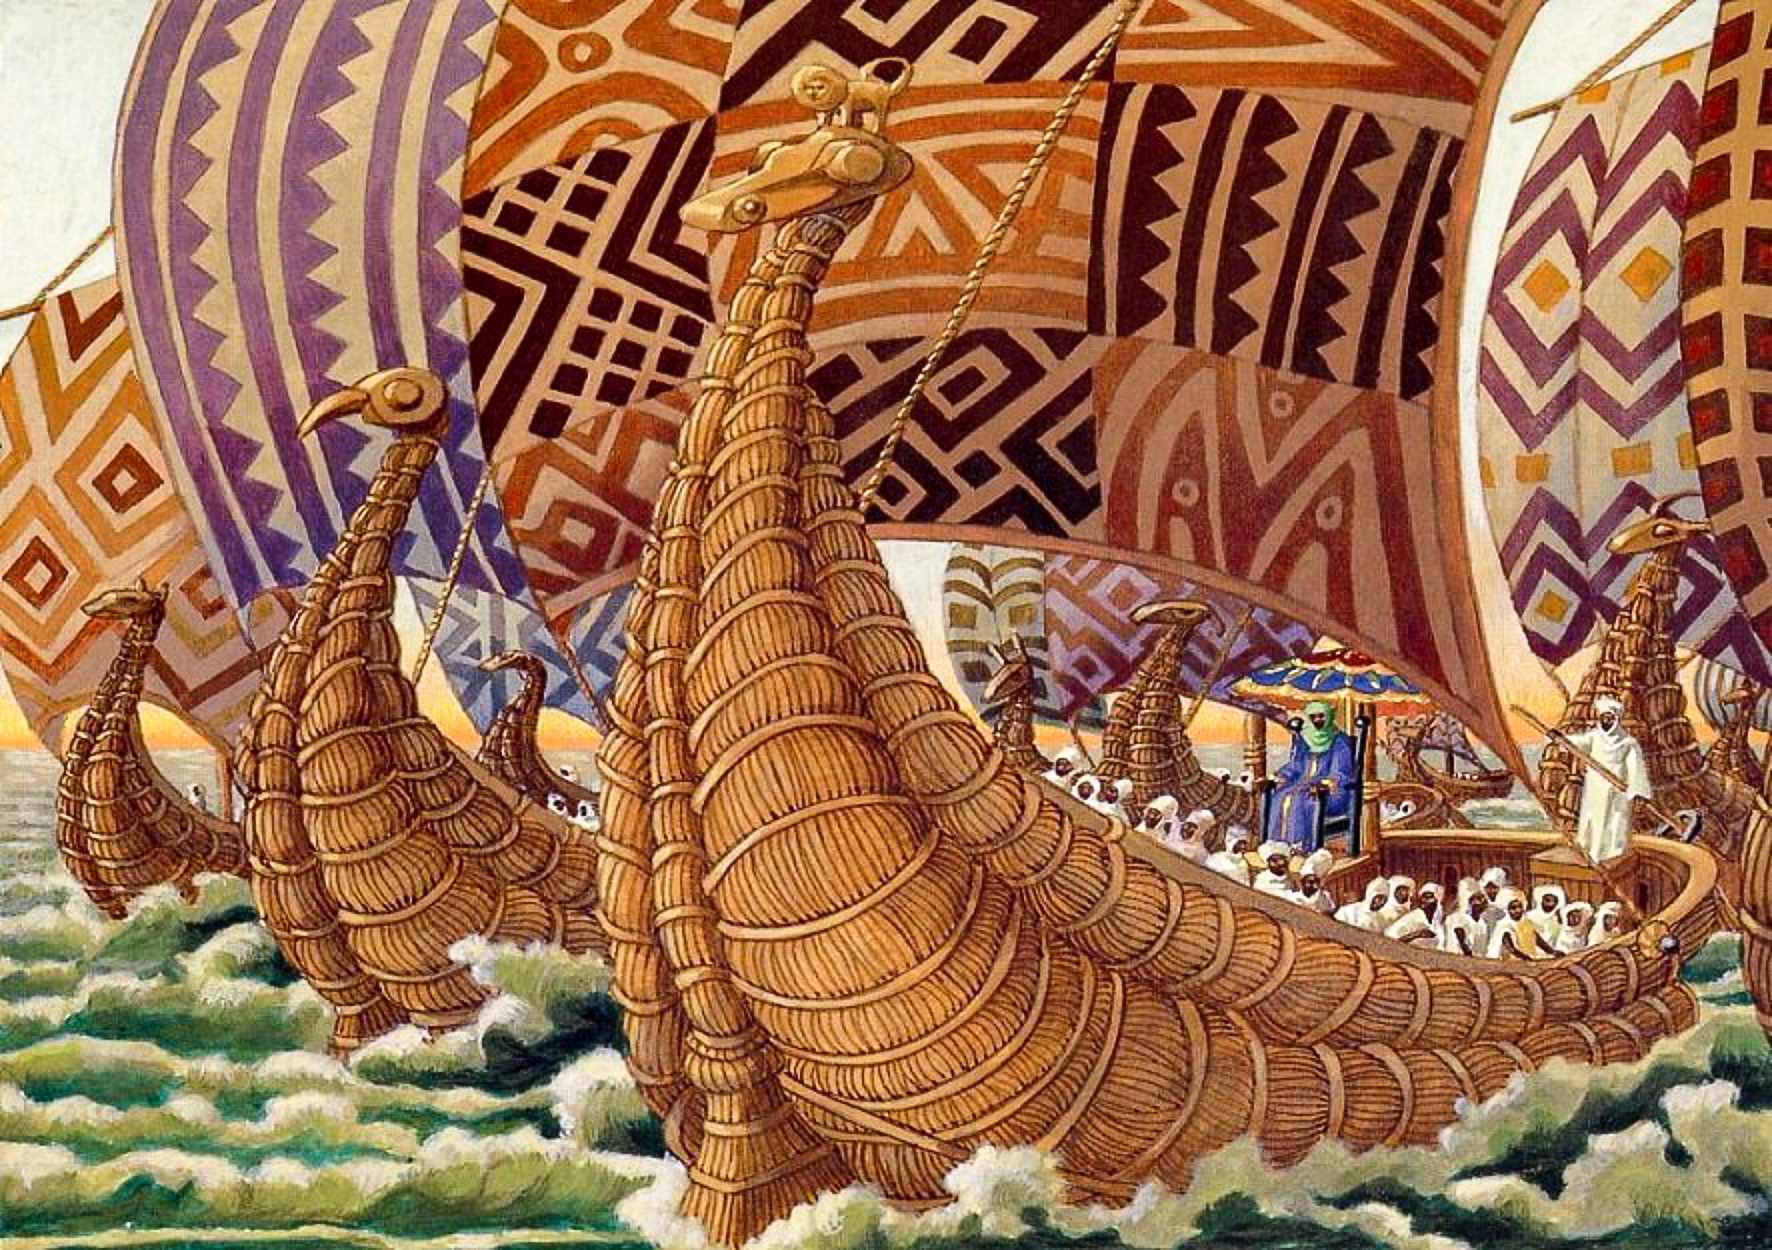 Betimleme - Abu Bakari II, Atlantik boyunca devasa filosuyla Batı'ya yelken açıyor.